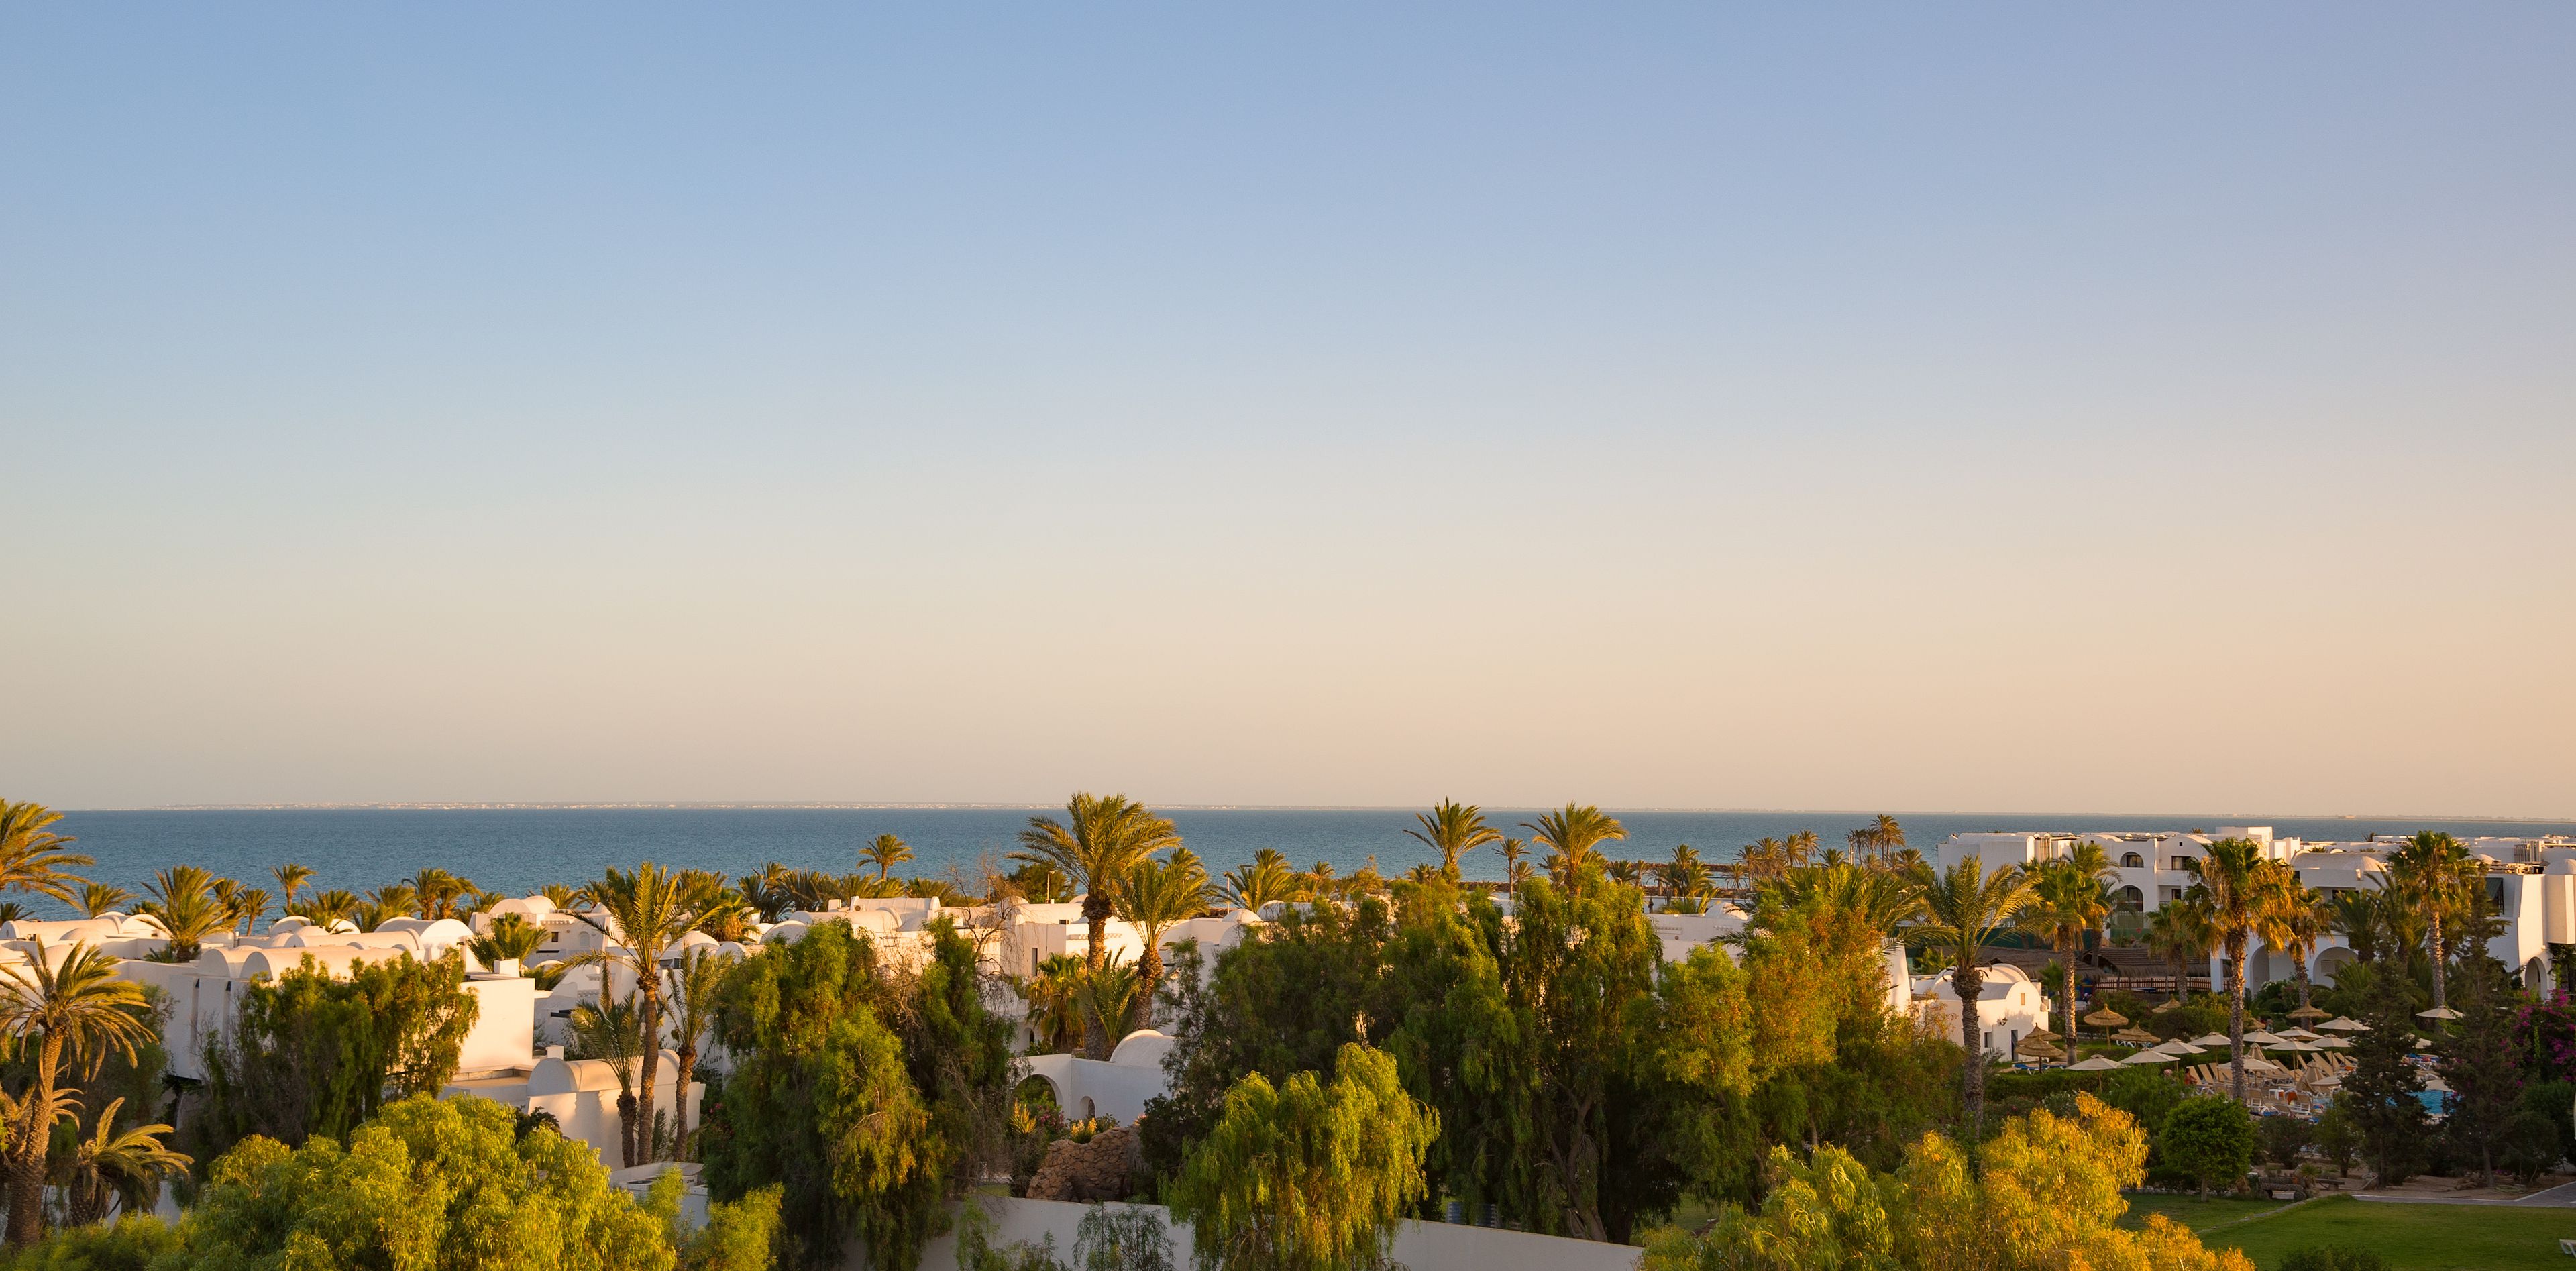 Diese Orte empfehlen sich für ein Wellnesshotel in Tunesien